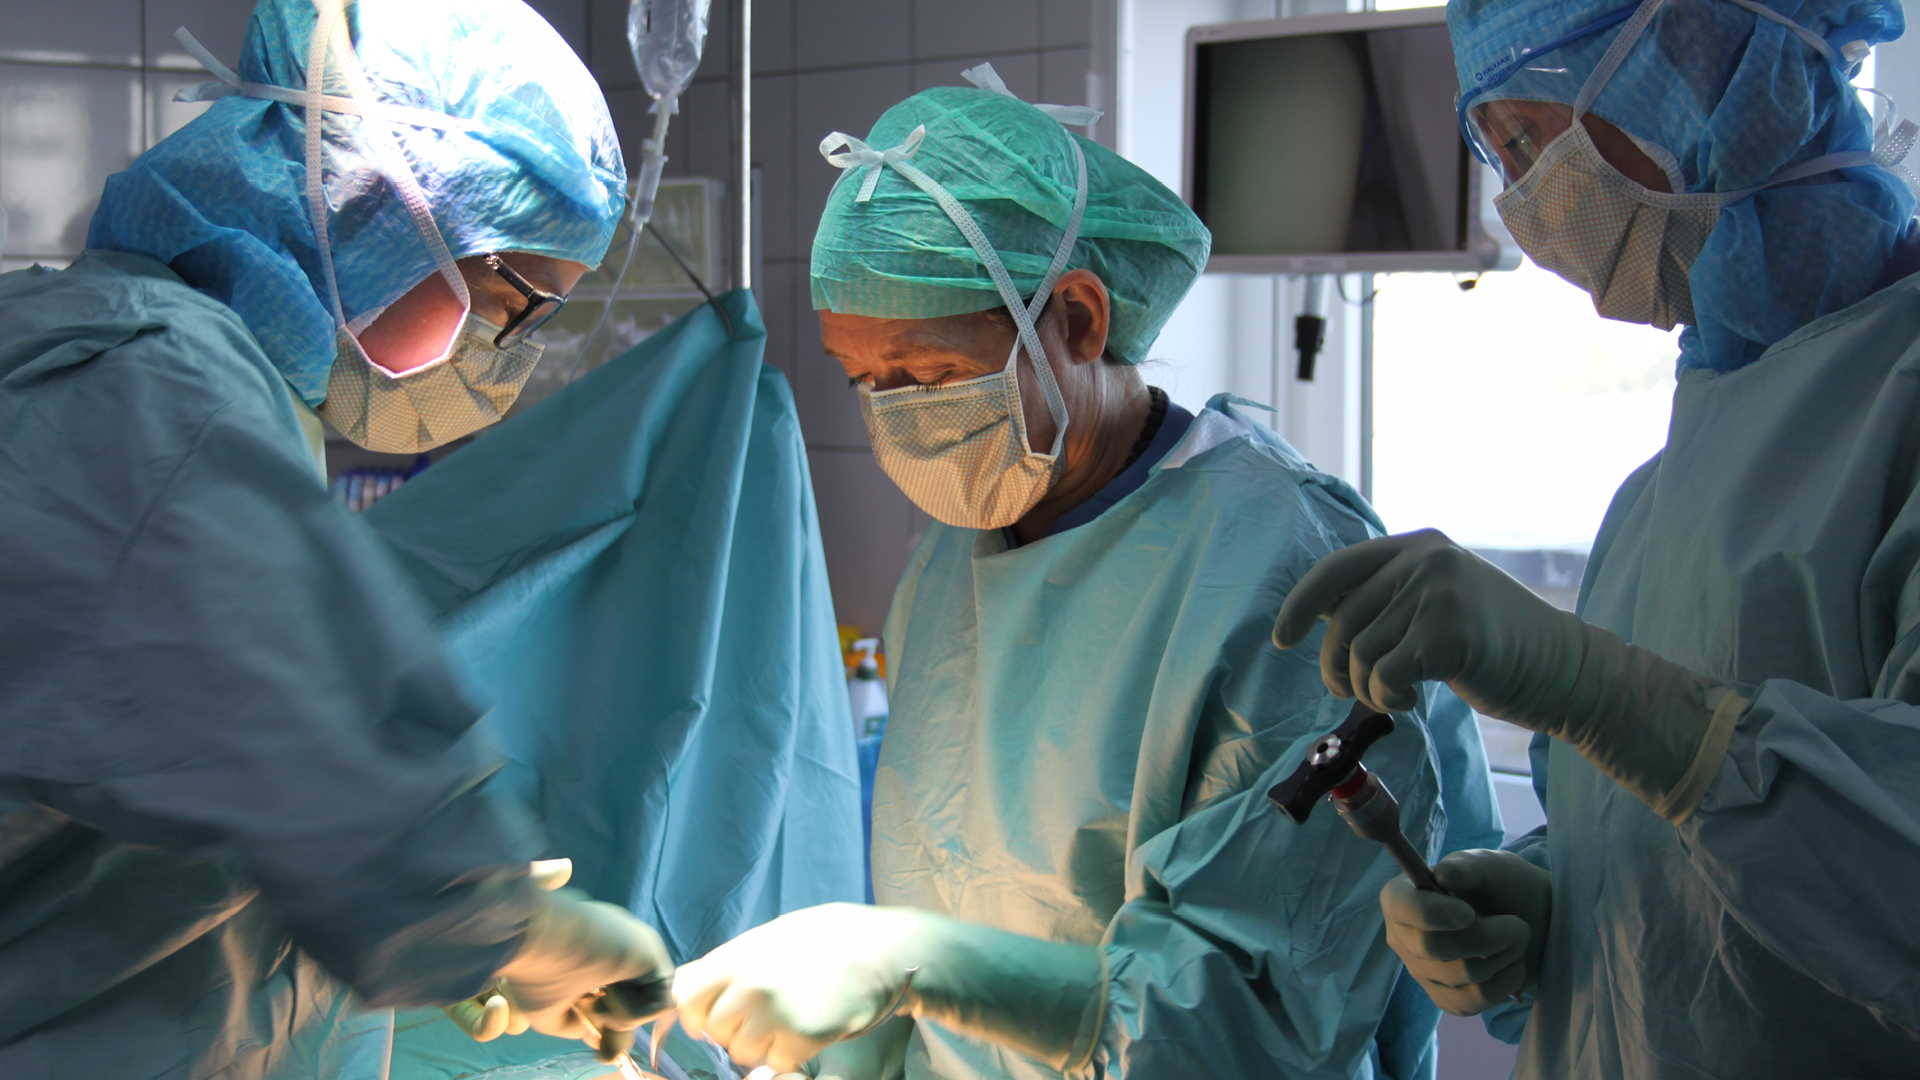 Bild från operation, kirurg assisterad av övrig operationspersonal